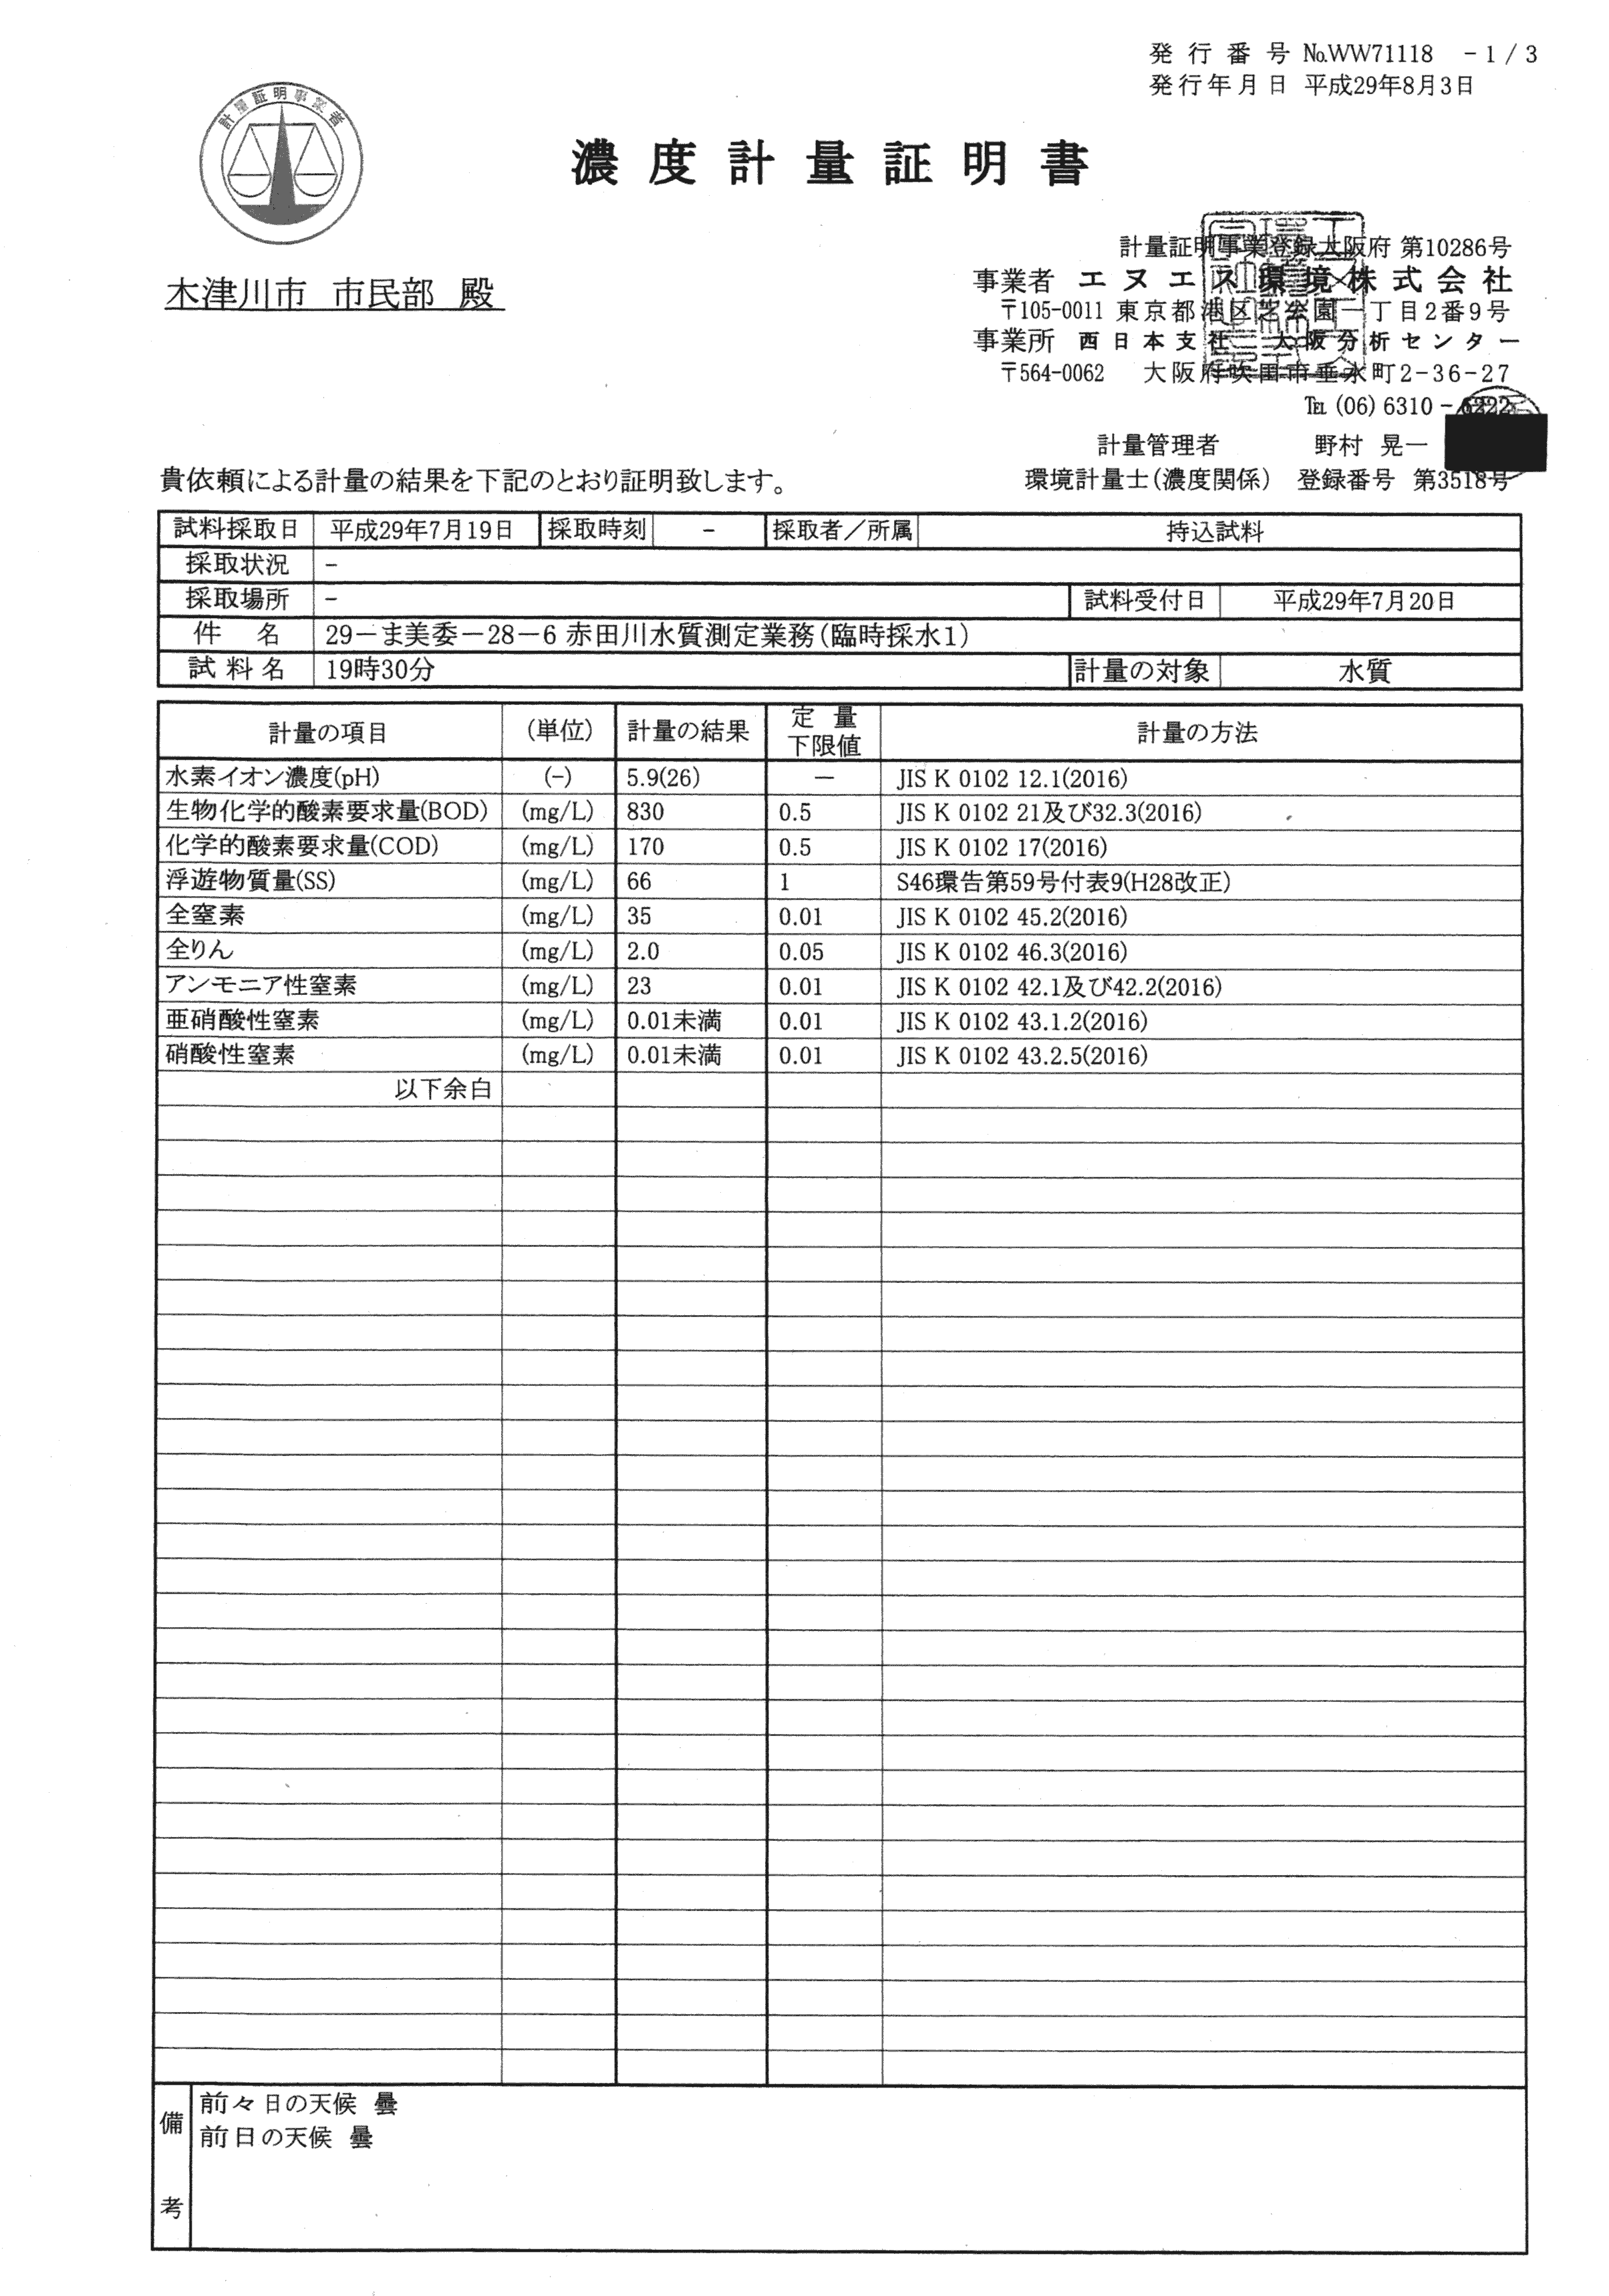 平成29年11月-赤田川水質汚濁状況調査報告書-59